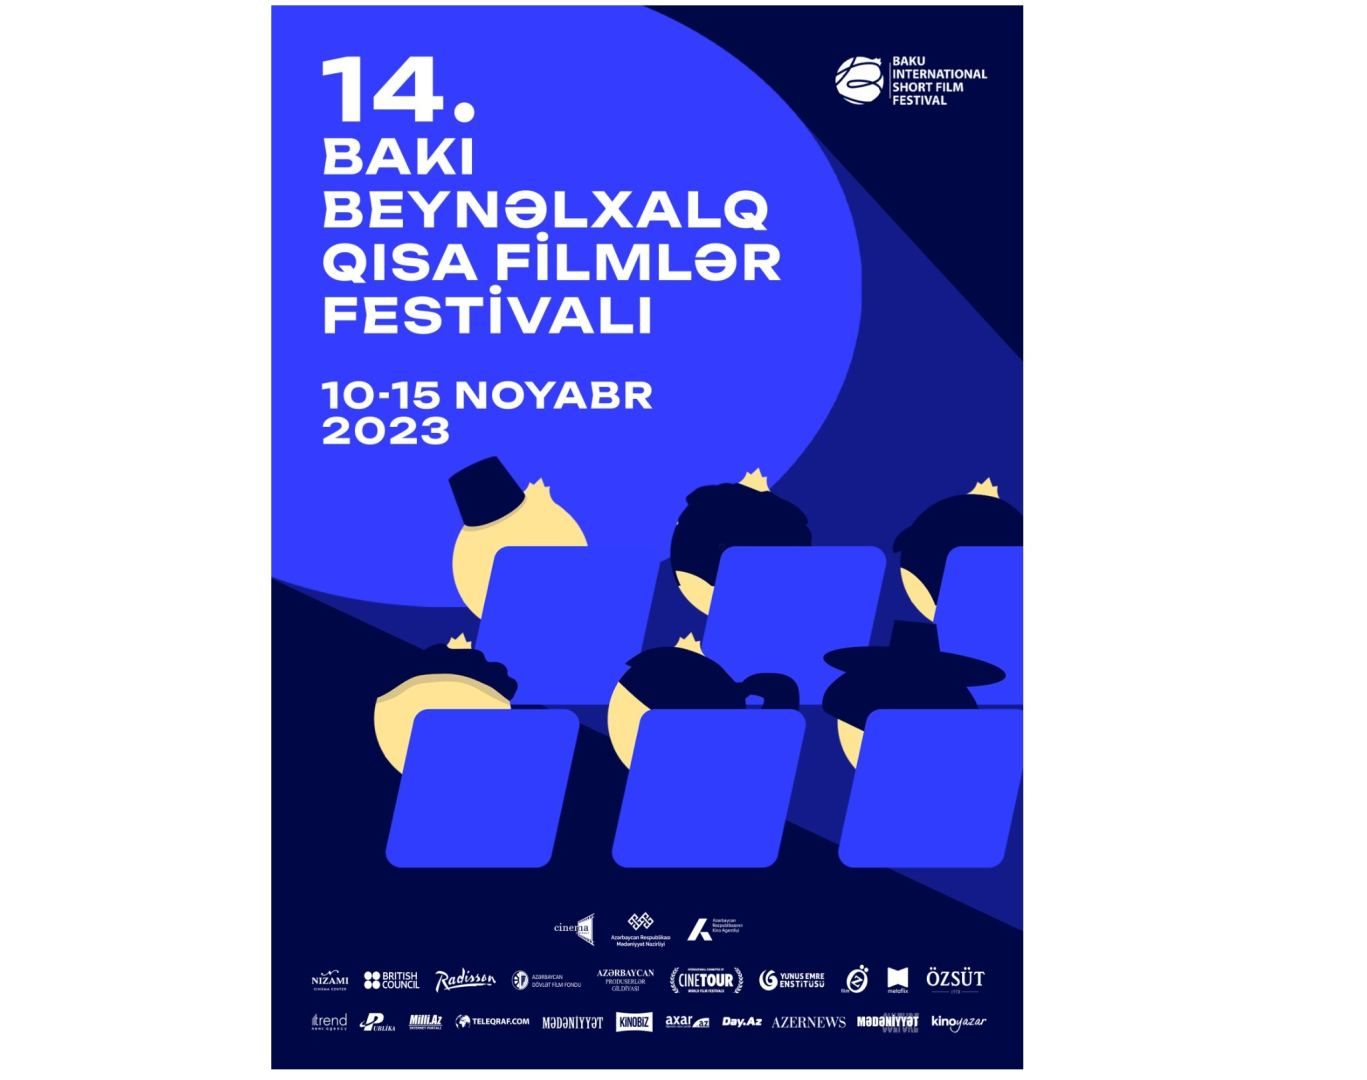 Baku to host International Short Film Festival